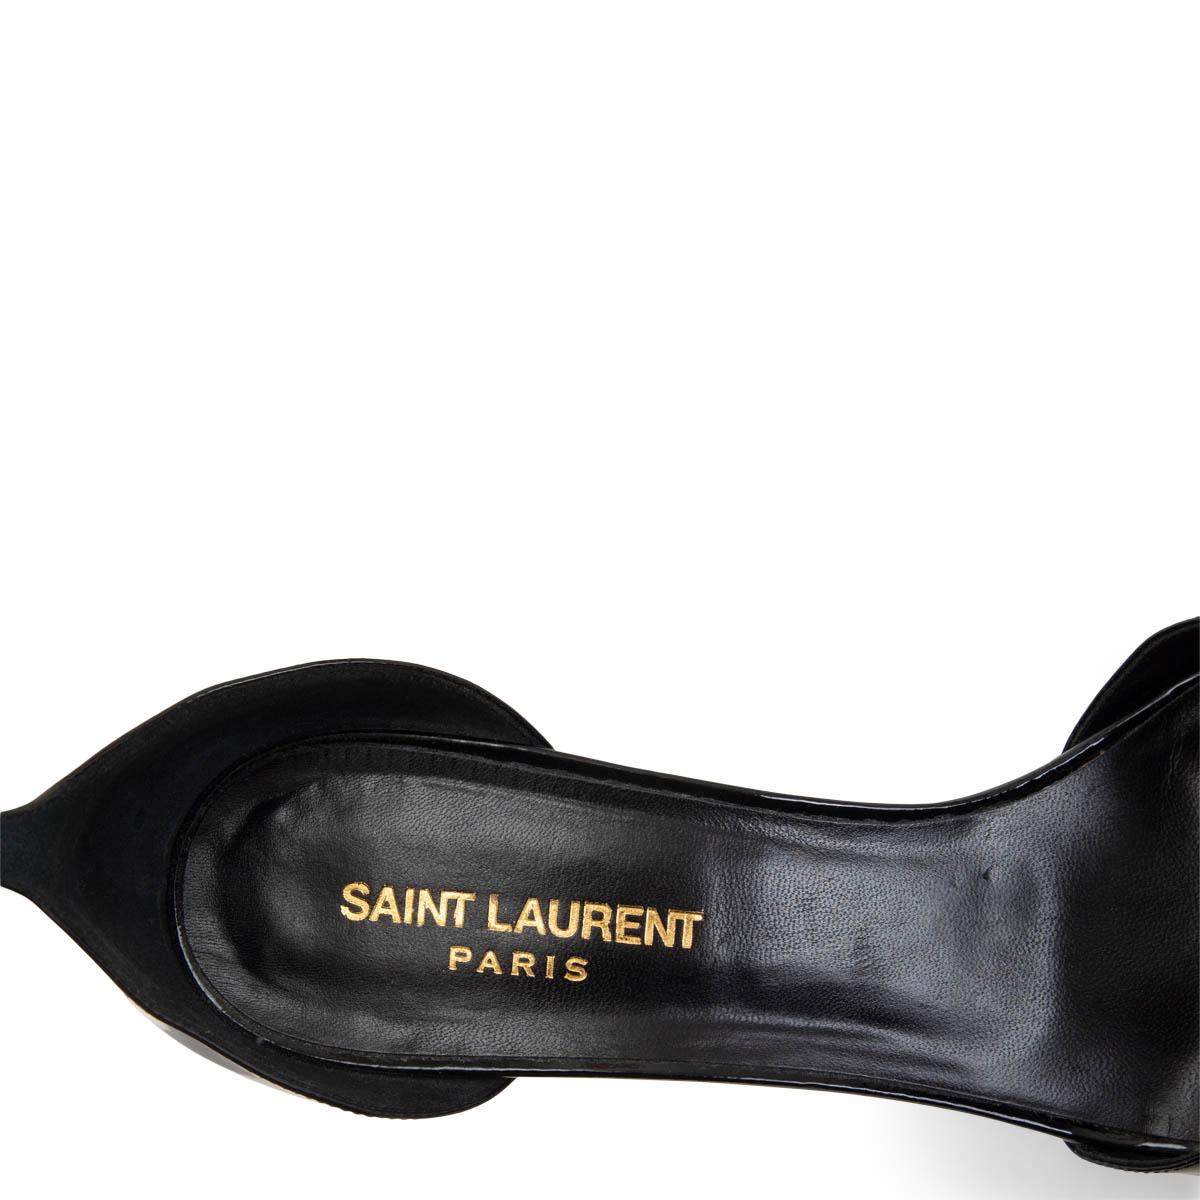 Black SAINT LAURENT black patent leather JANE 105 BOW Sandals Shoes 39